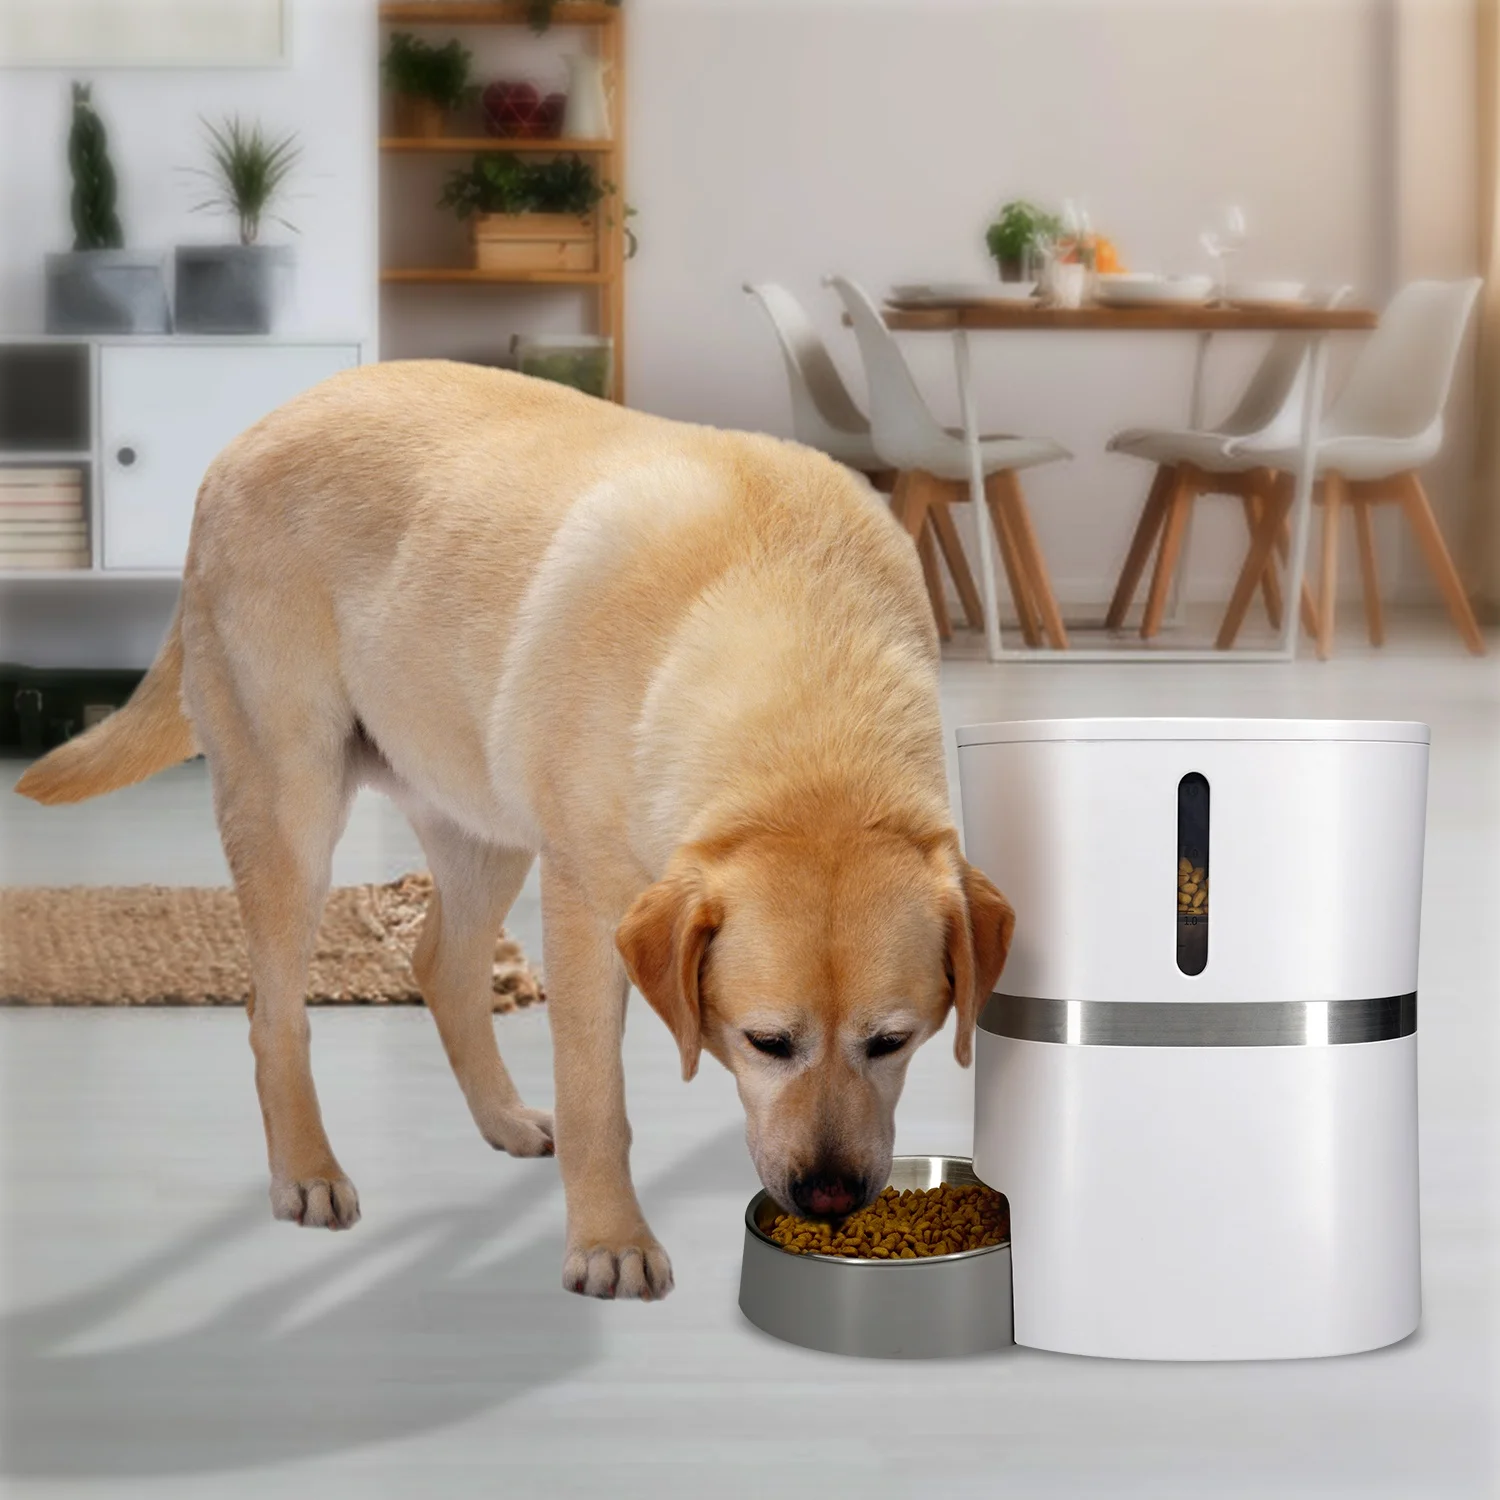 

Comedero Gato Automatico Dispensador De Comida Smart Pet Feeder Bowls & Feeders Microchip Cat Food Automatic Dog Food Dispenser, White